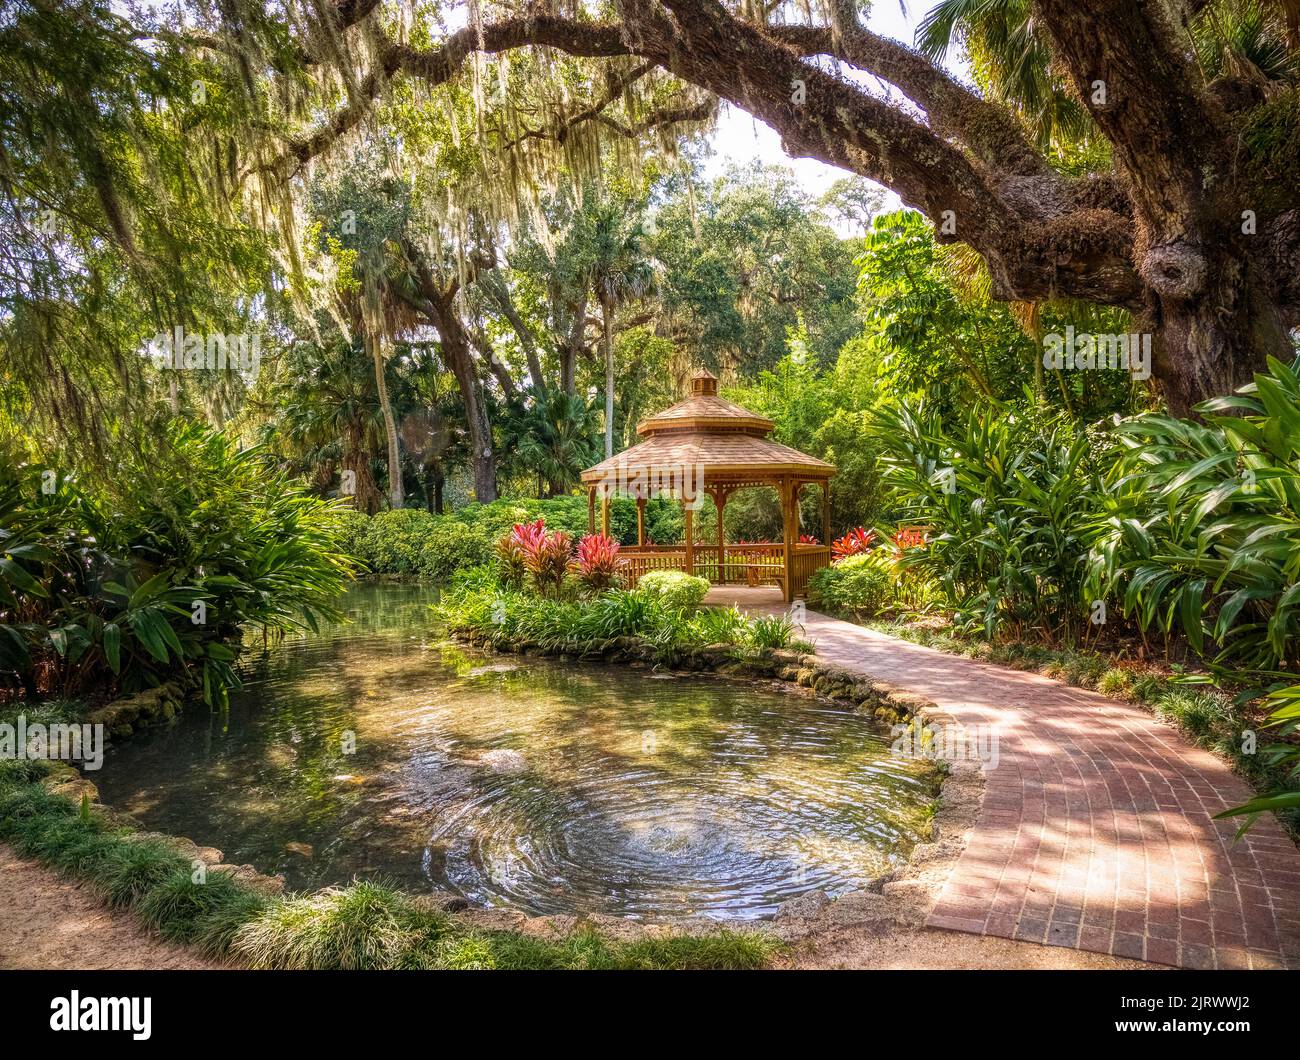 Estanque en el Distrito Histórico Washington Oaks del Parque Estatal Washington Oaks Gardens en Palm Coast, Florida, EE.UU Foto de stock